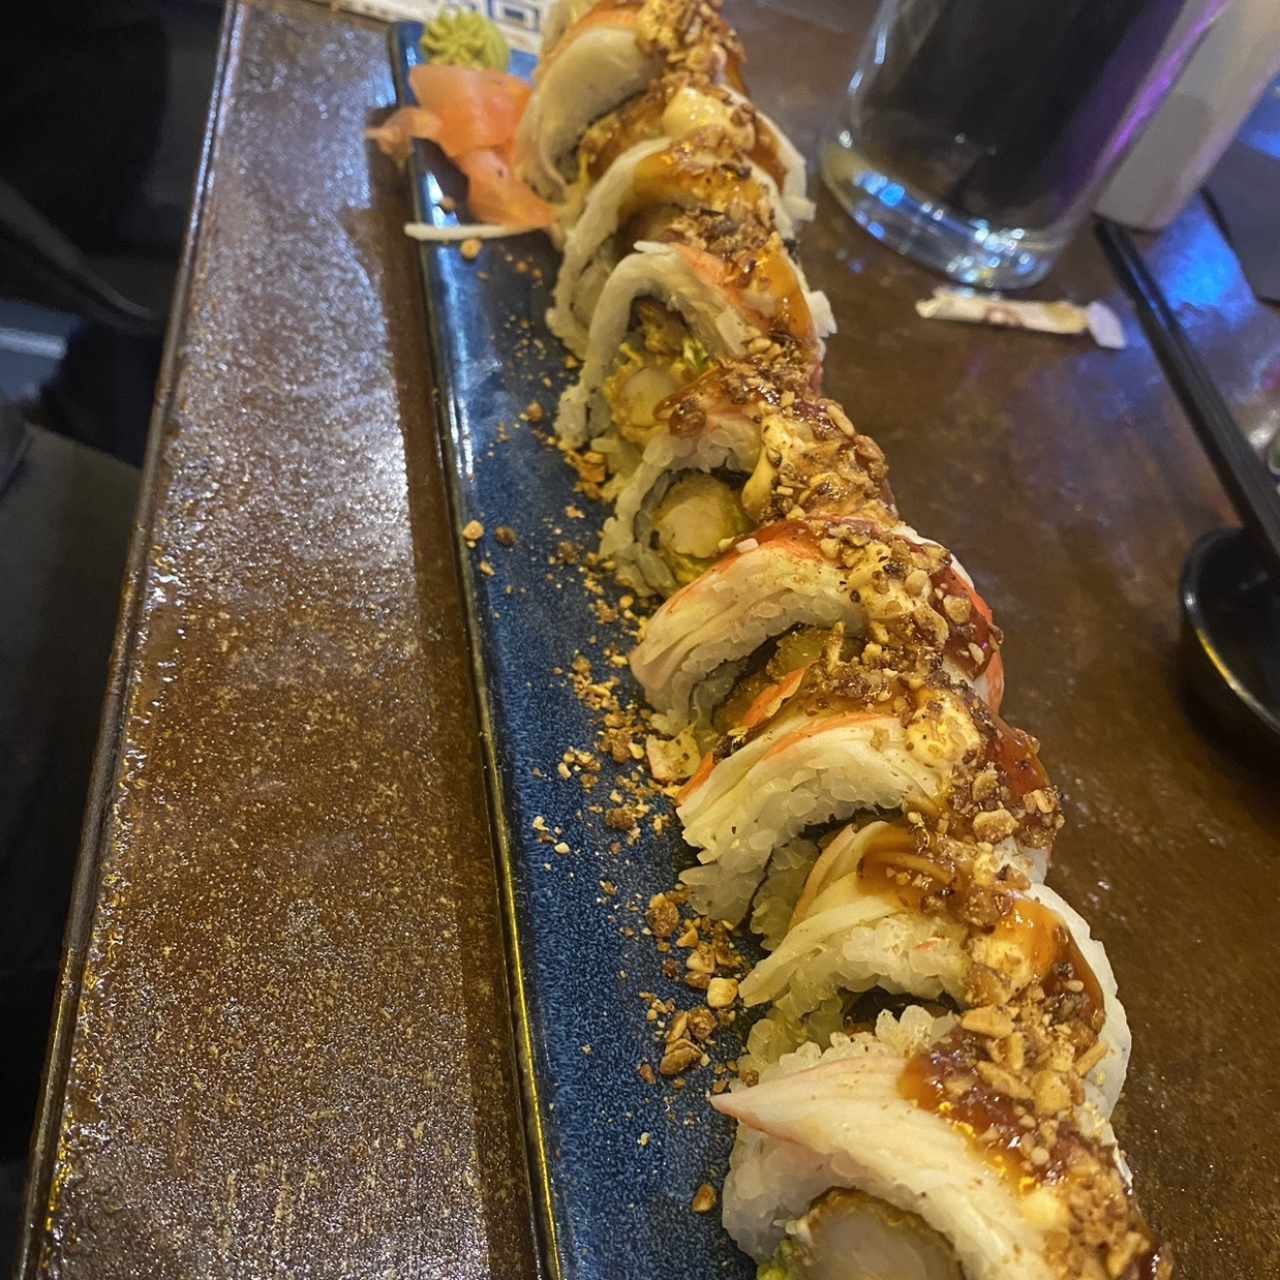 Sushi Rolls - Almond Crunch Roll